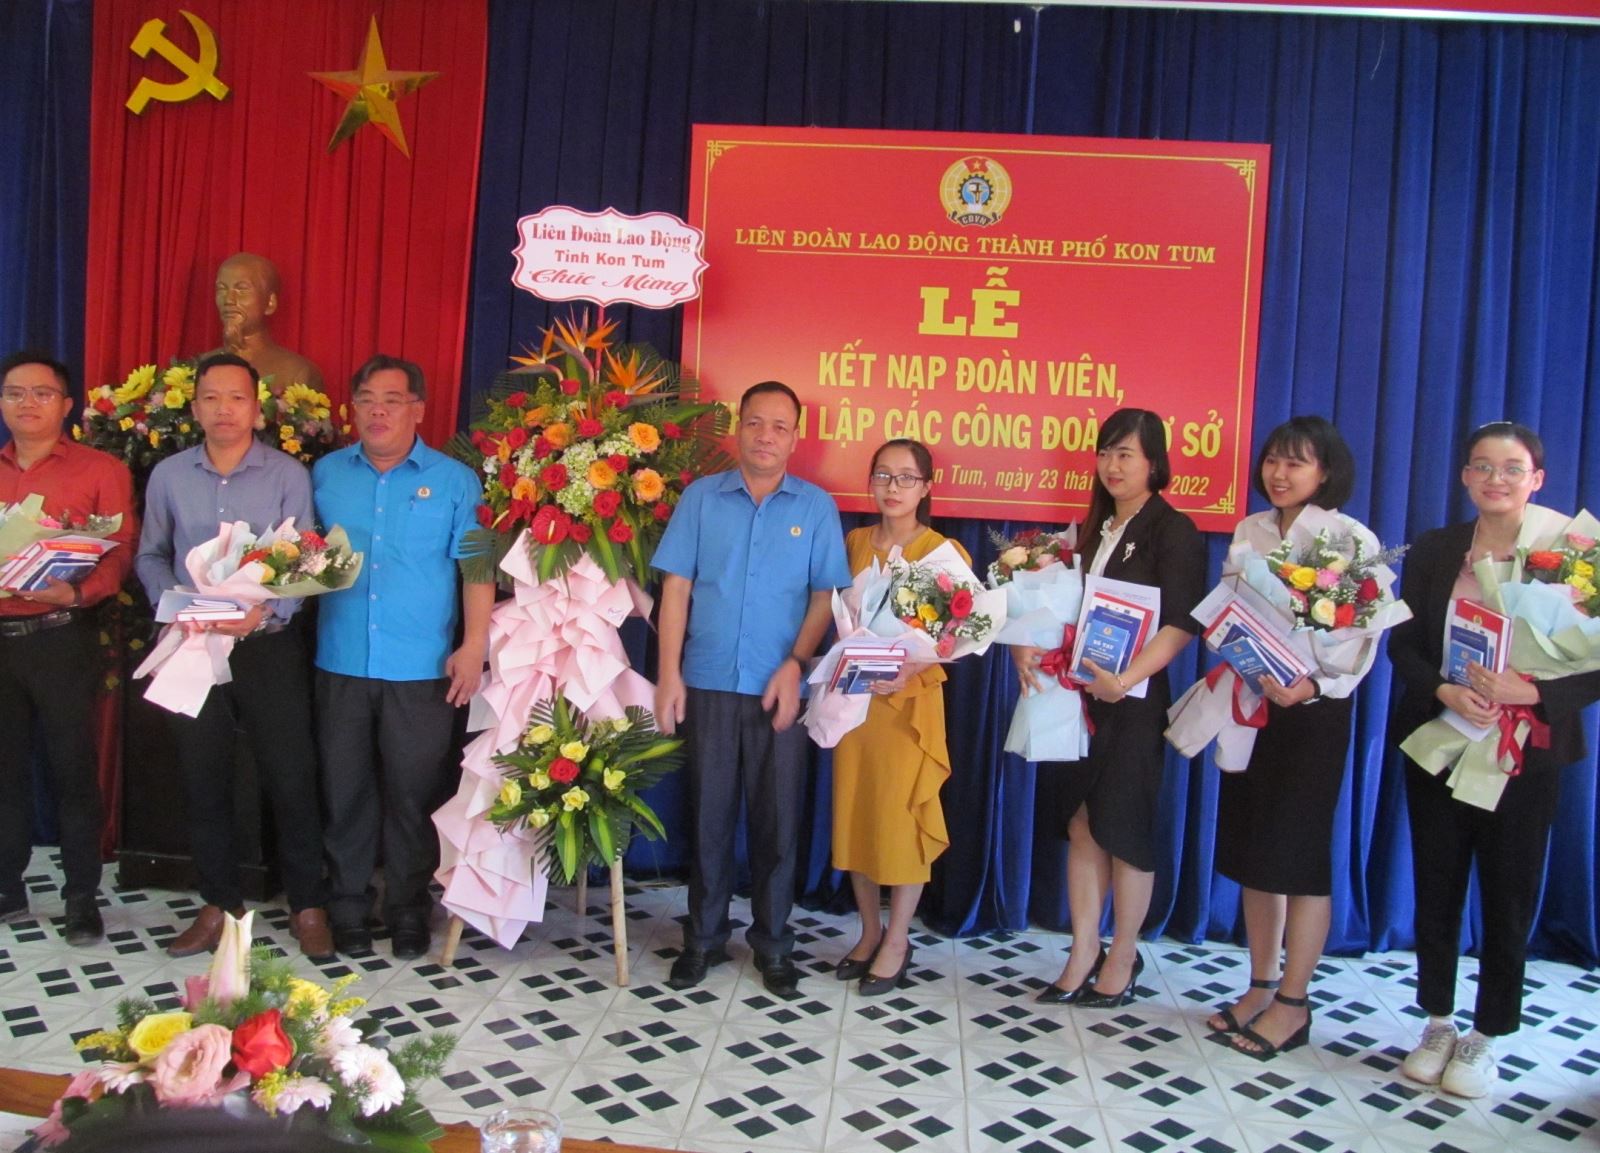 Liên đoàn Lao động Thành phố Kon Tum đẩy mạnh kết nạp đoàn viên, thành lập Công đoàn cơ sở doanh nghiệp ngoài nhà nước